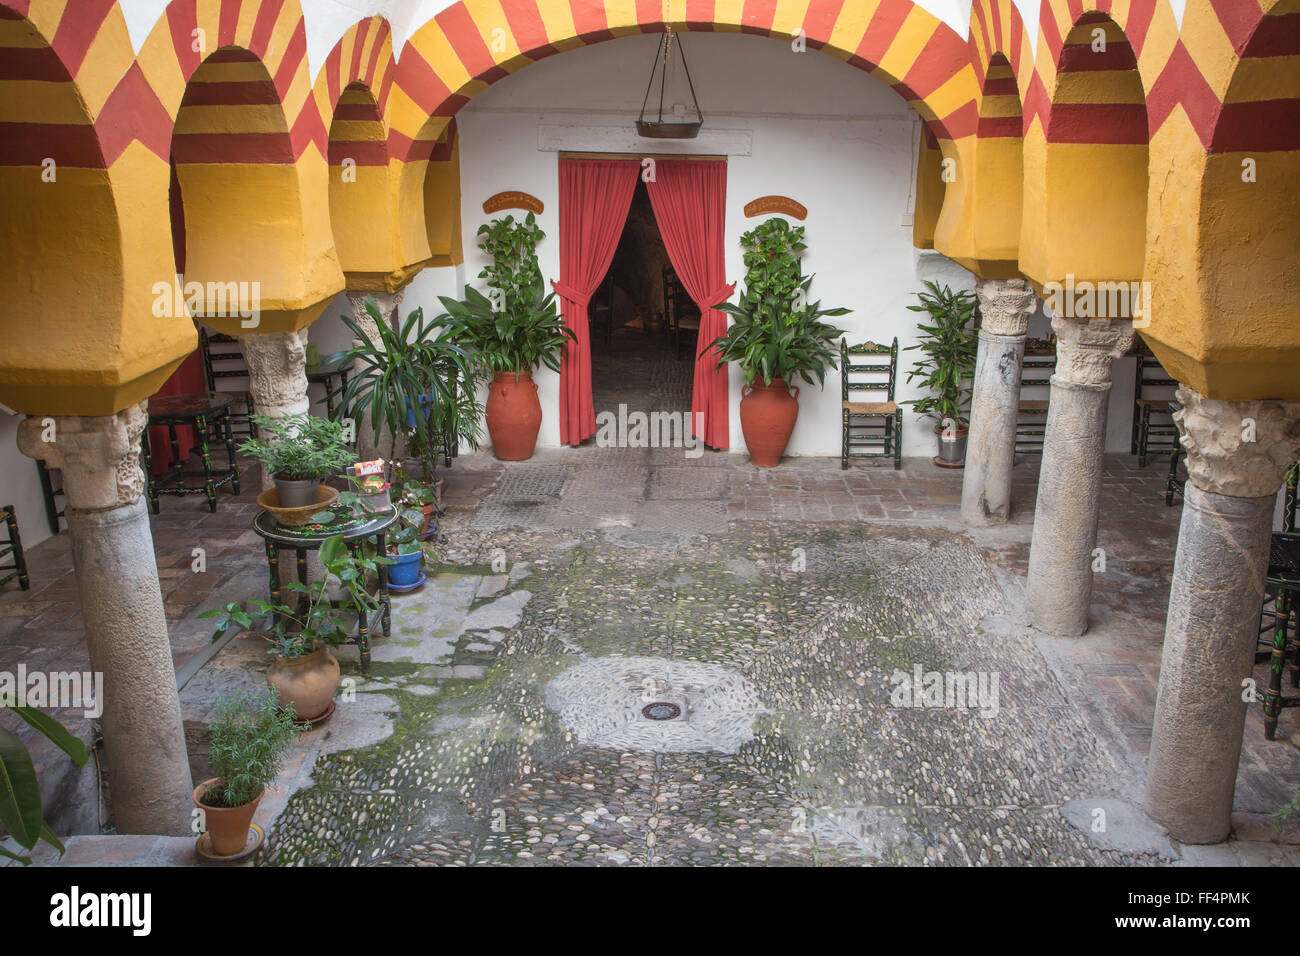 CORDOBA, Spanien - 26. Mai 2015: Kleine mittelalterliche externe Atrium des Banos Arabes mit der in der Regel Bögen. Stockfoto